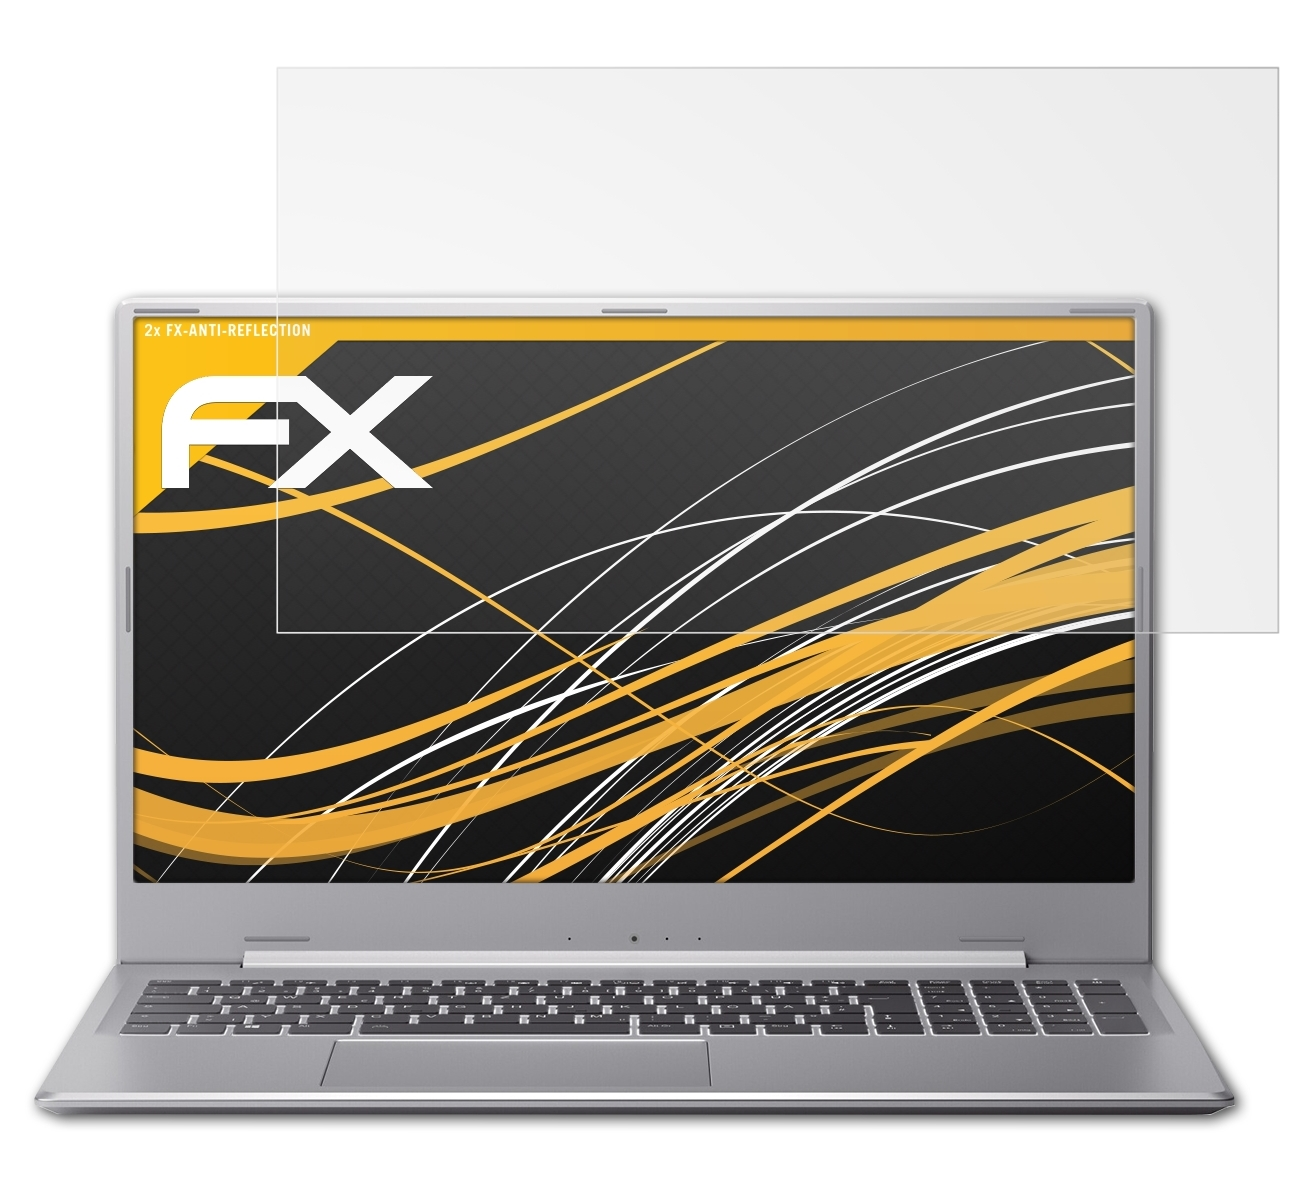 ATFOLIX 2x FX-Antireflex Displayschutz(für AKOYA Medion P17609 (MD62180))